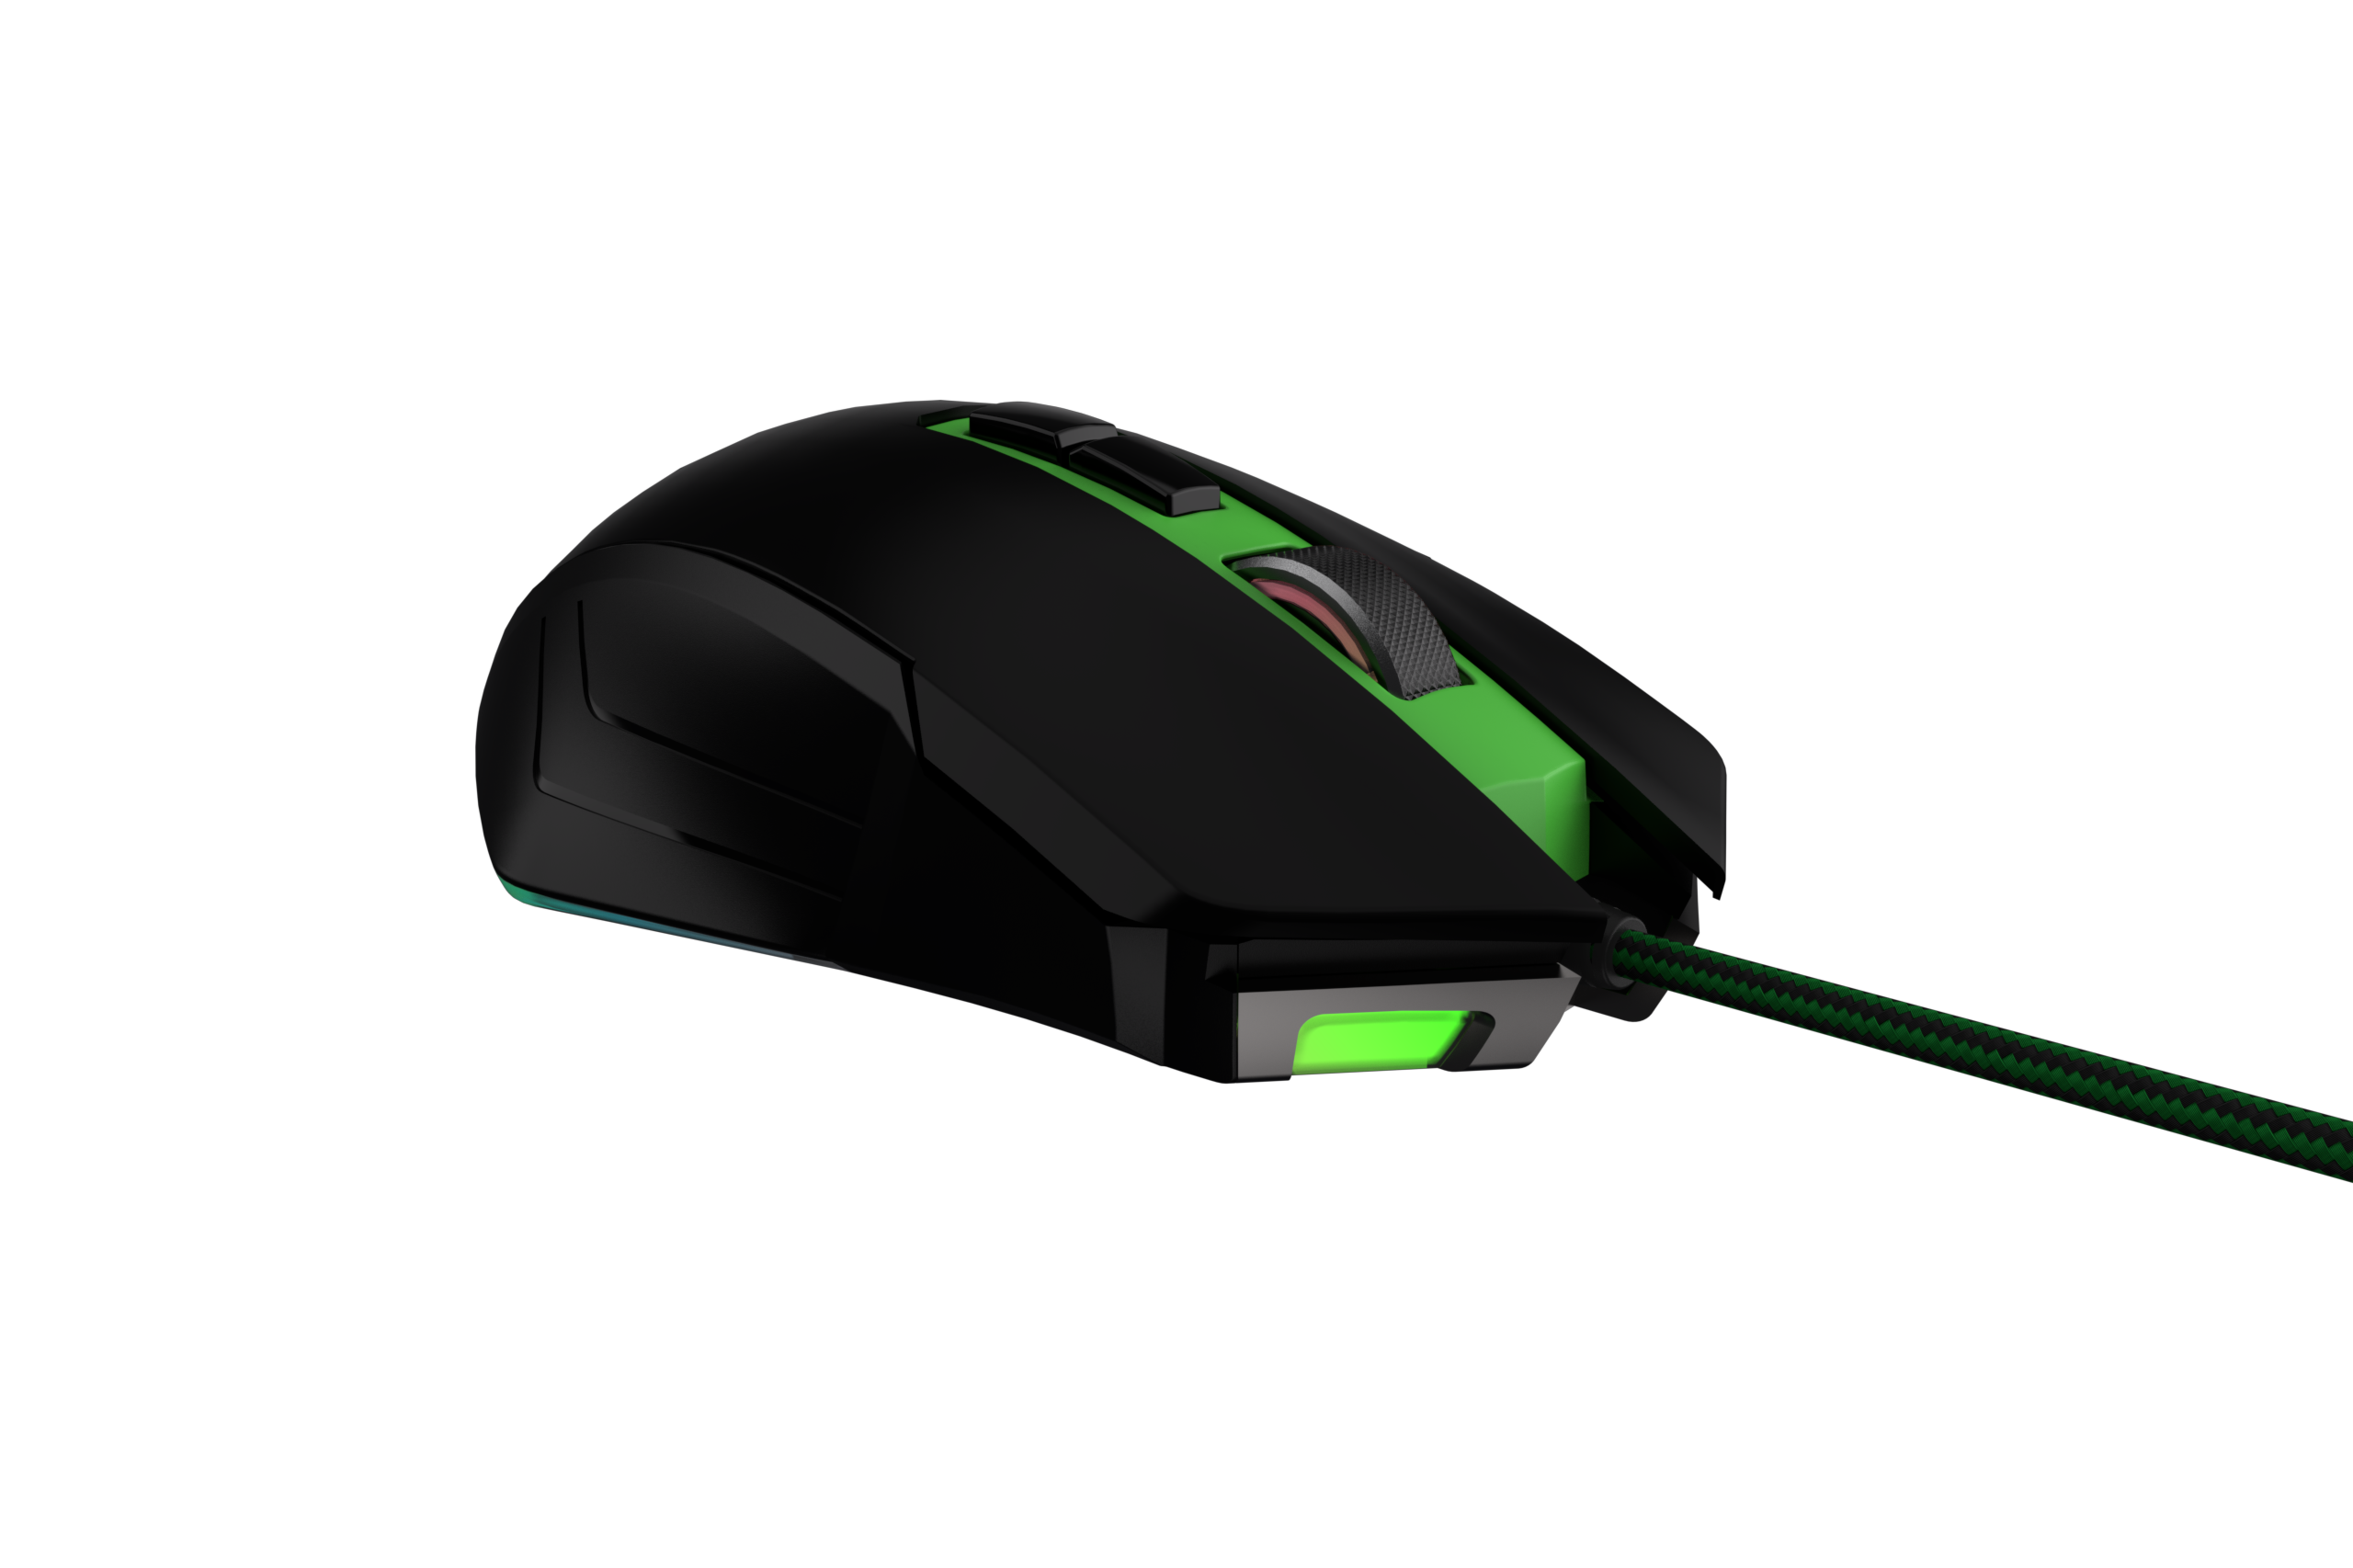 Gaming PUSAT Mouse, Black V11